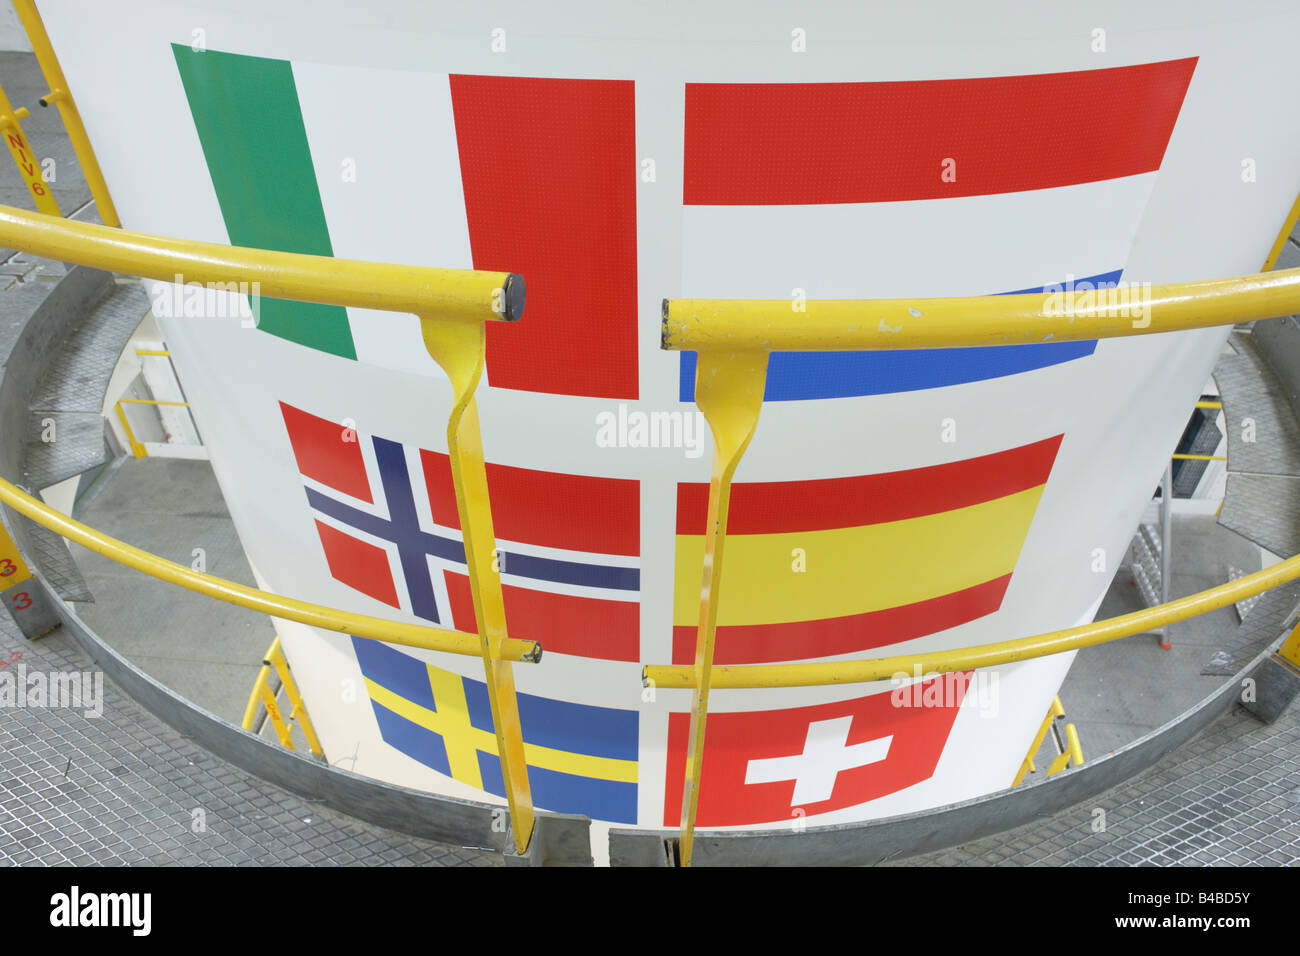 Mitglied Länderflaggen, Ariane 5 Rakete Booster in Europropulsions Booster Integration Gebäude, European Space Agency Weltraumbahnhof Stockfoto